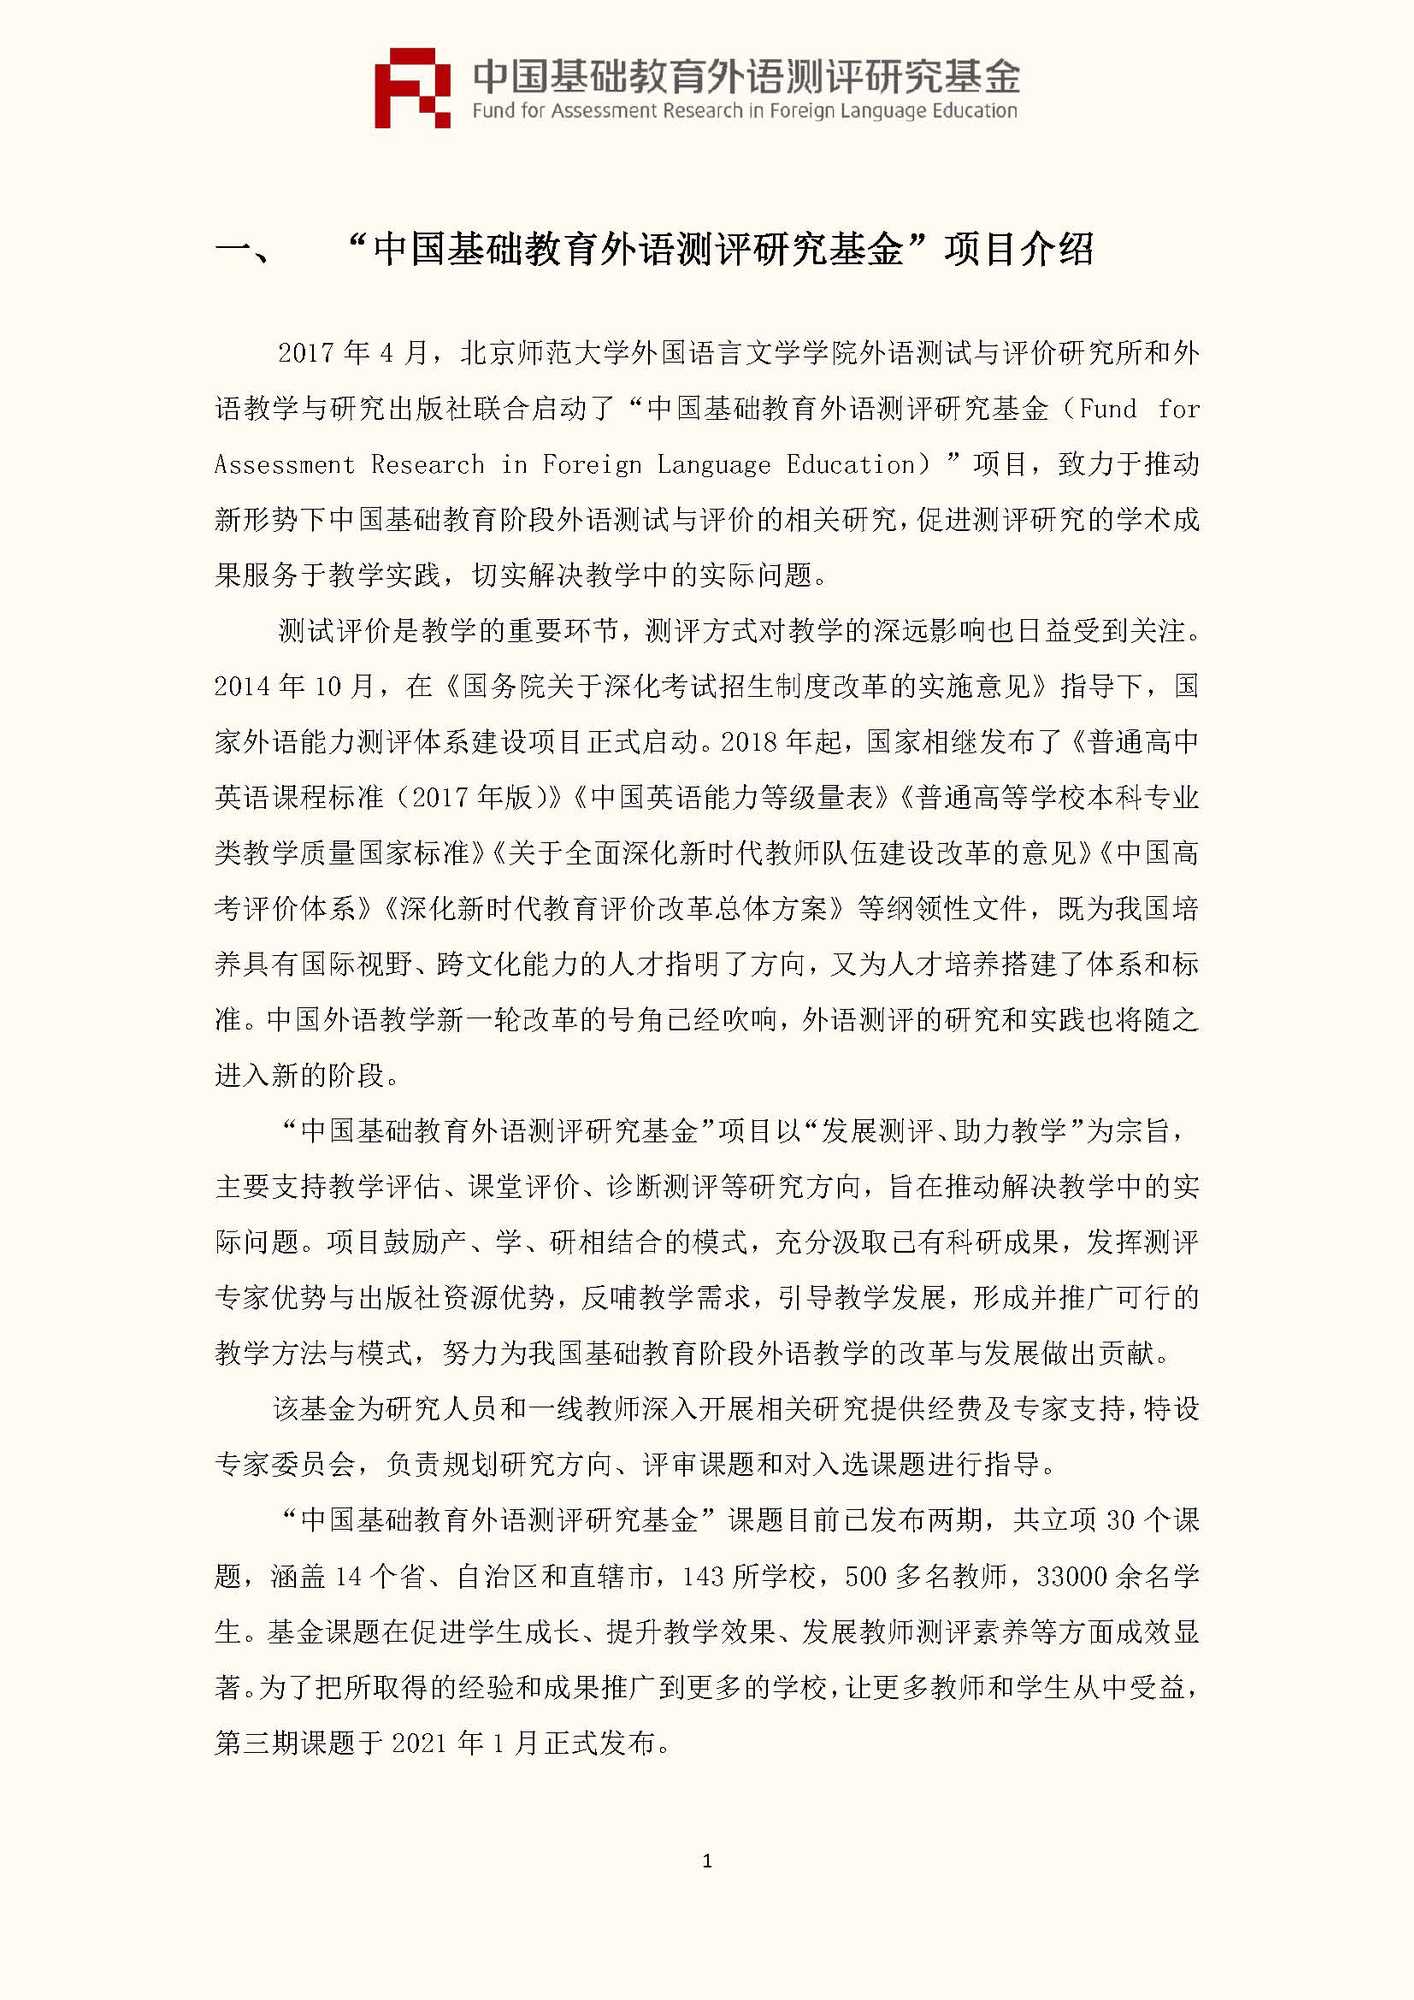 文件1：“中国基础教育外语测评研究基金”第三期课题申报指南_页面_03